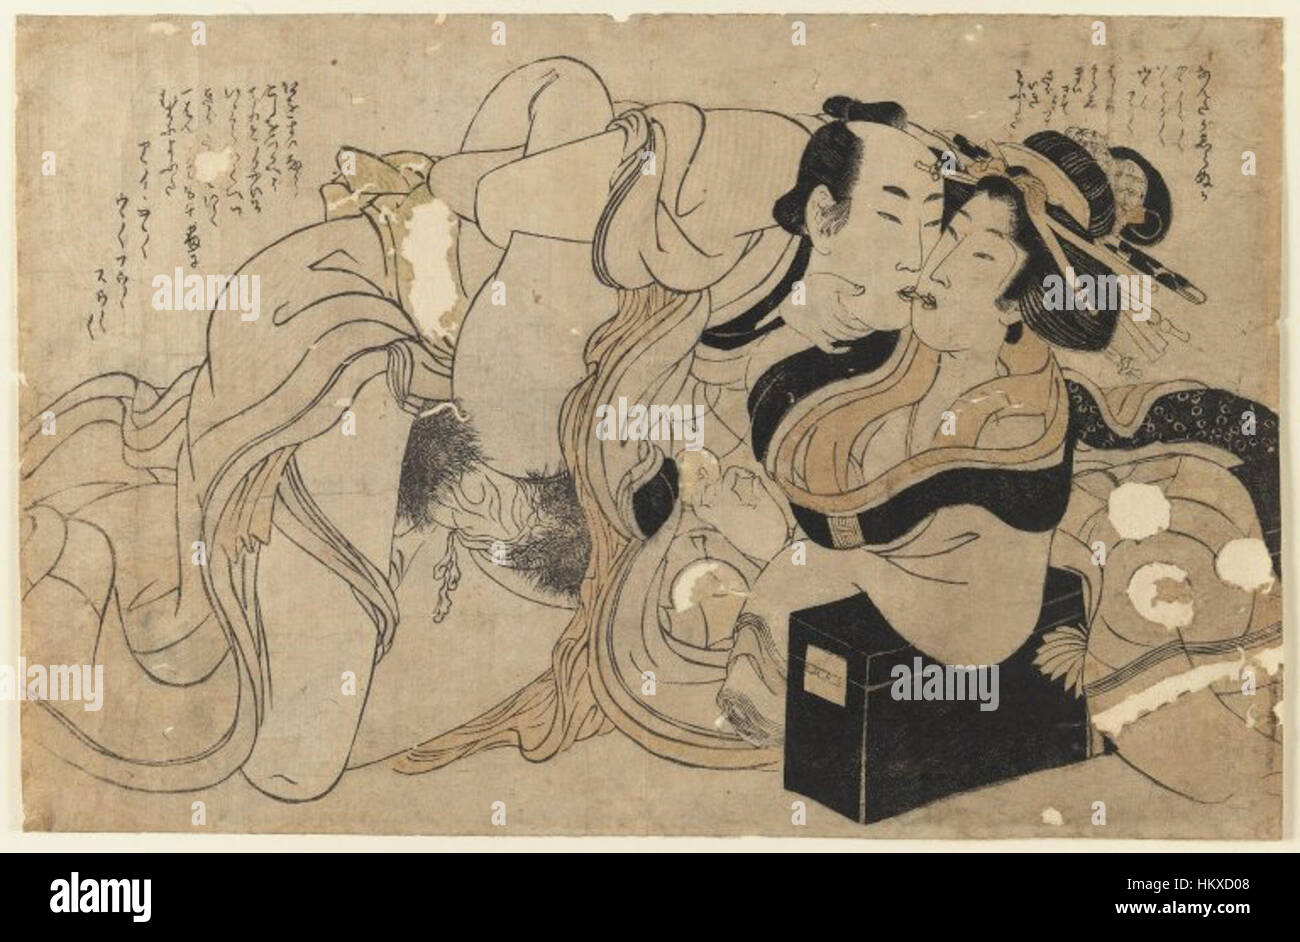 Le Musée de Brooklyn - Couple amoureux (gravure sur bois) - Kitagawa Utamaro - 2 Banque D'Images